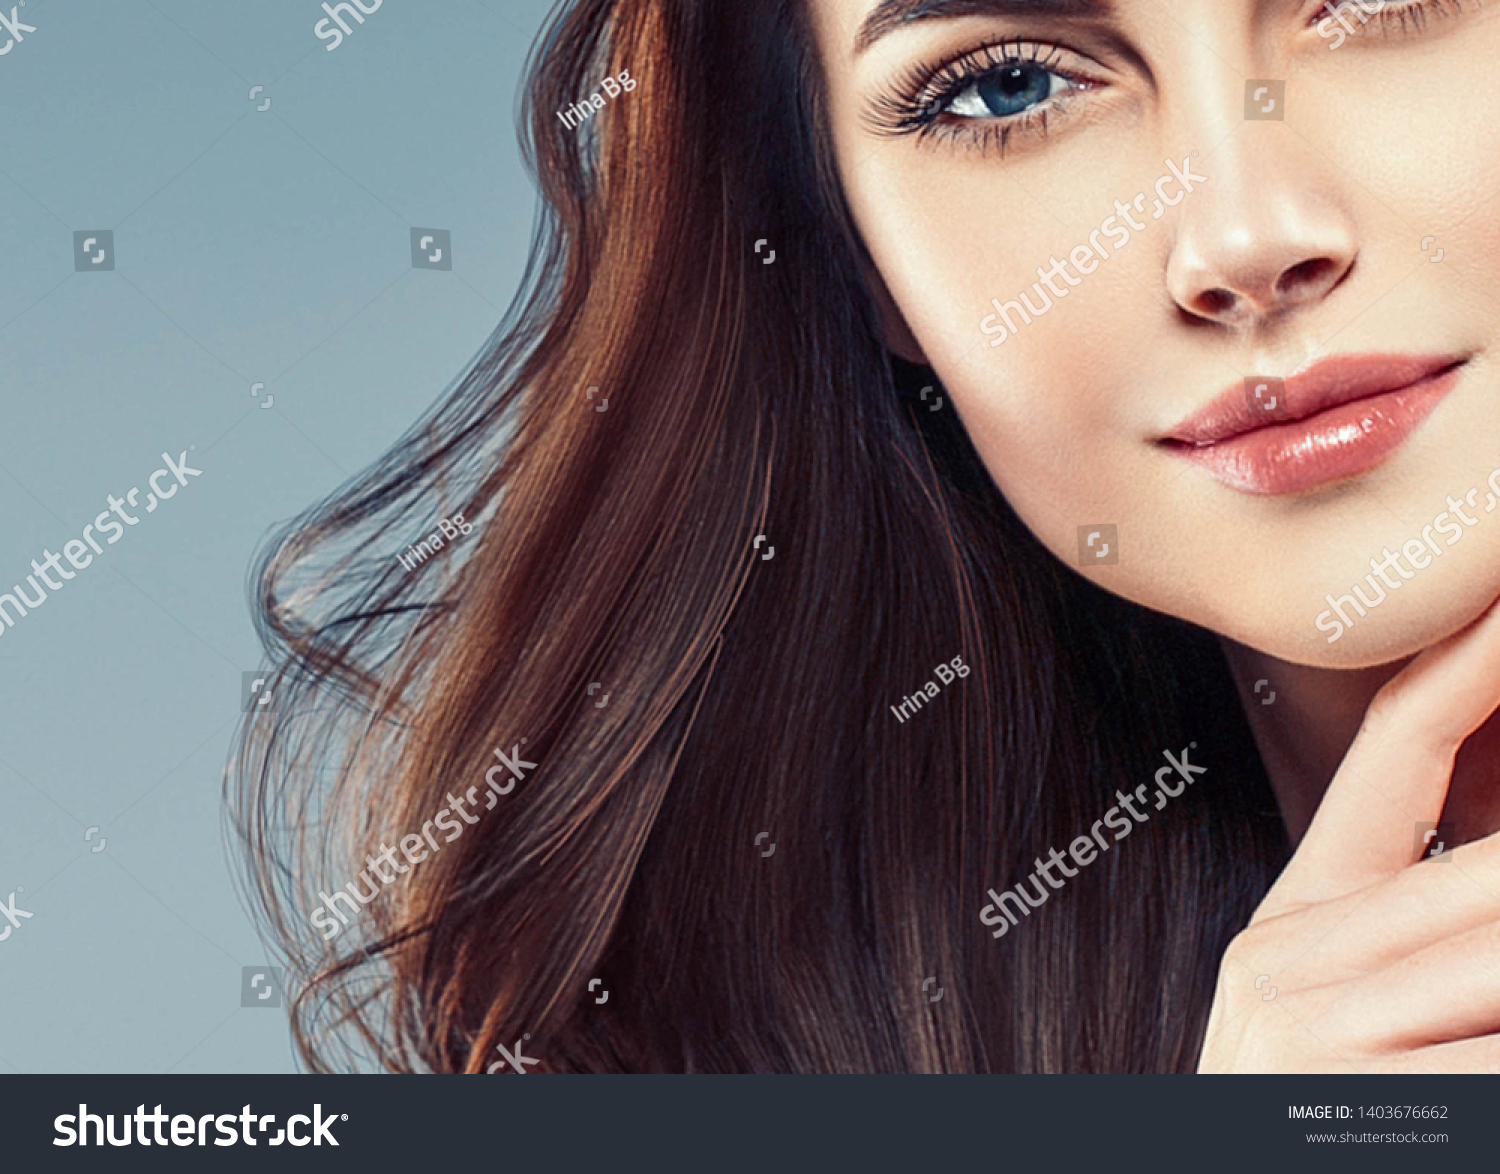 Beautiful woman face closeup with beauty makeup and brunette hair closeup #1403676662